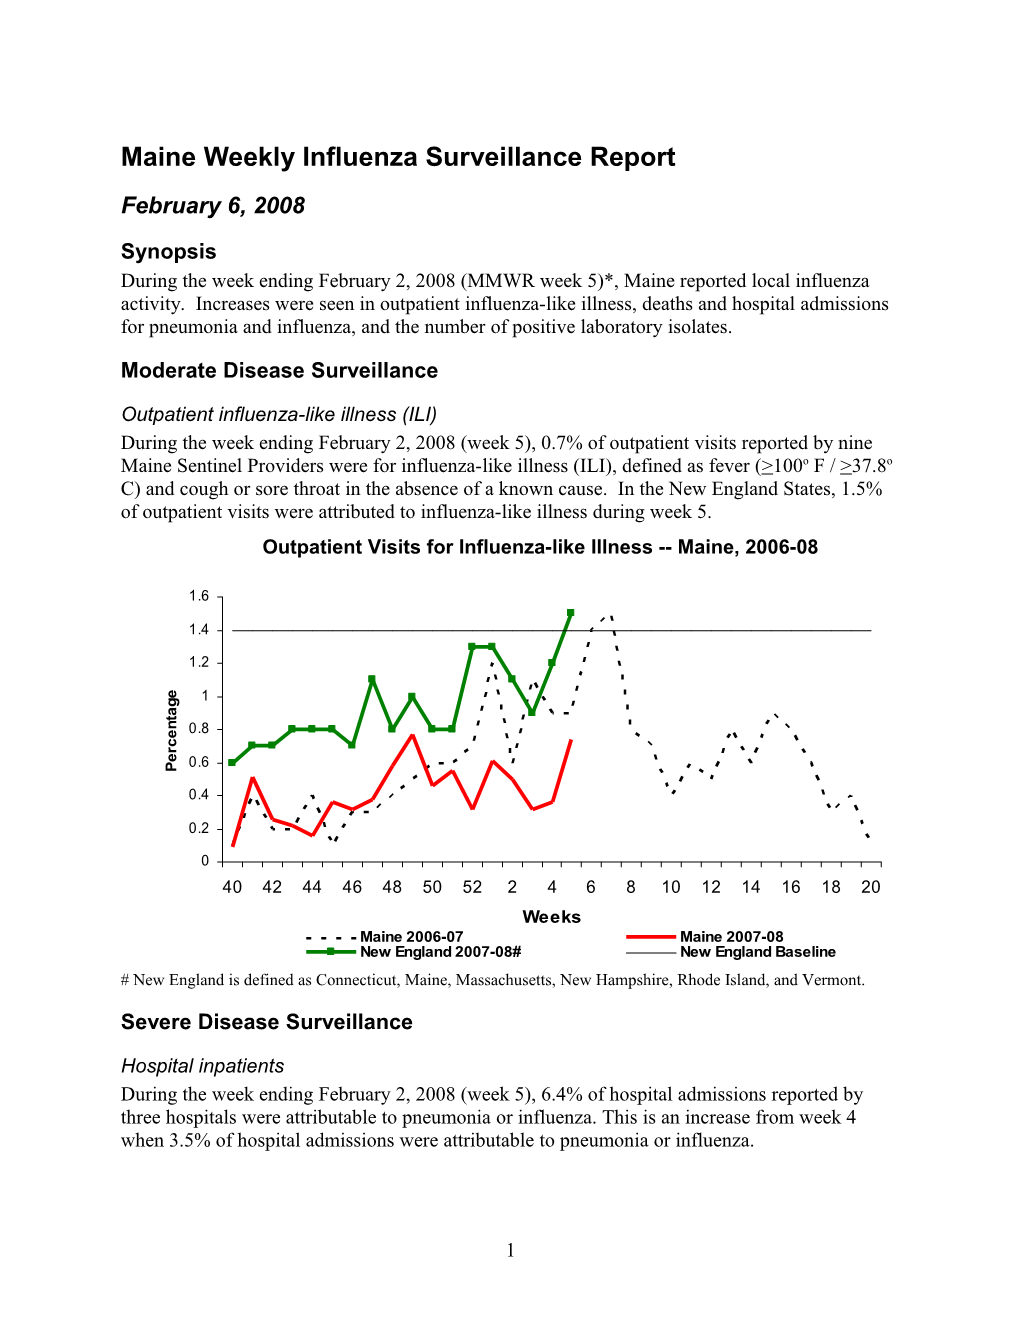 Maine Weekly Influenza Surveillance Report s1